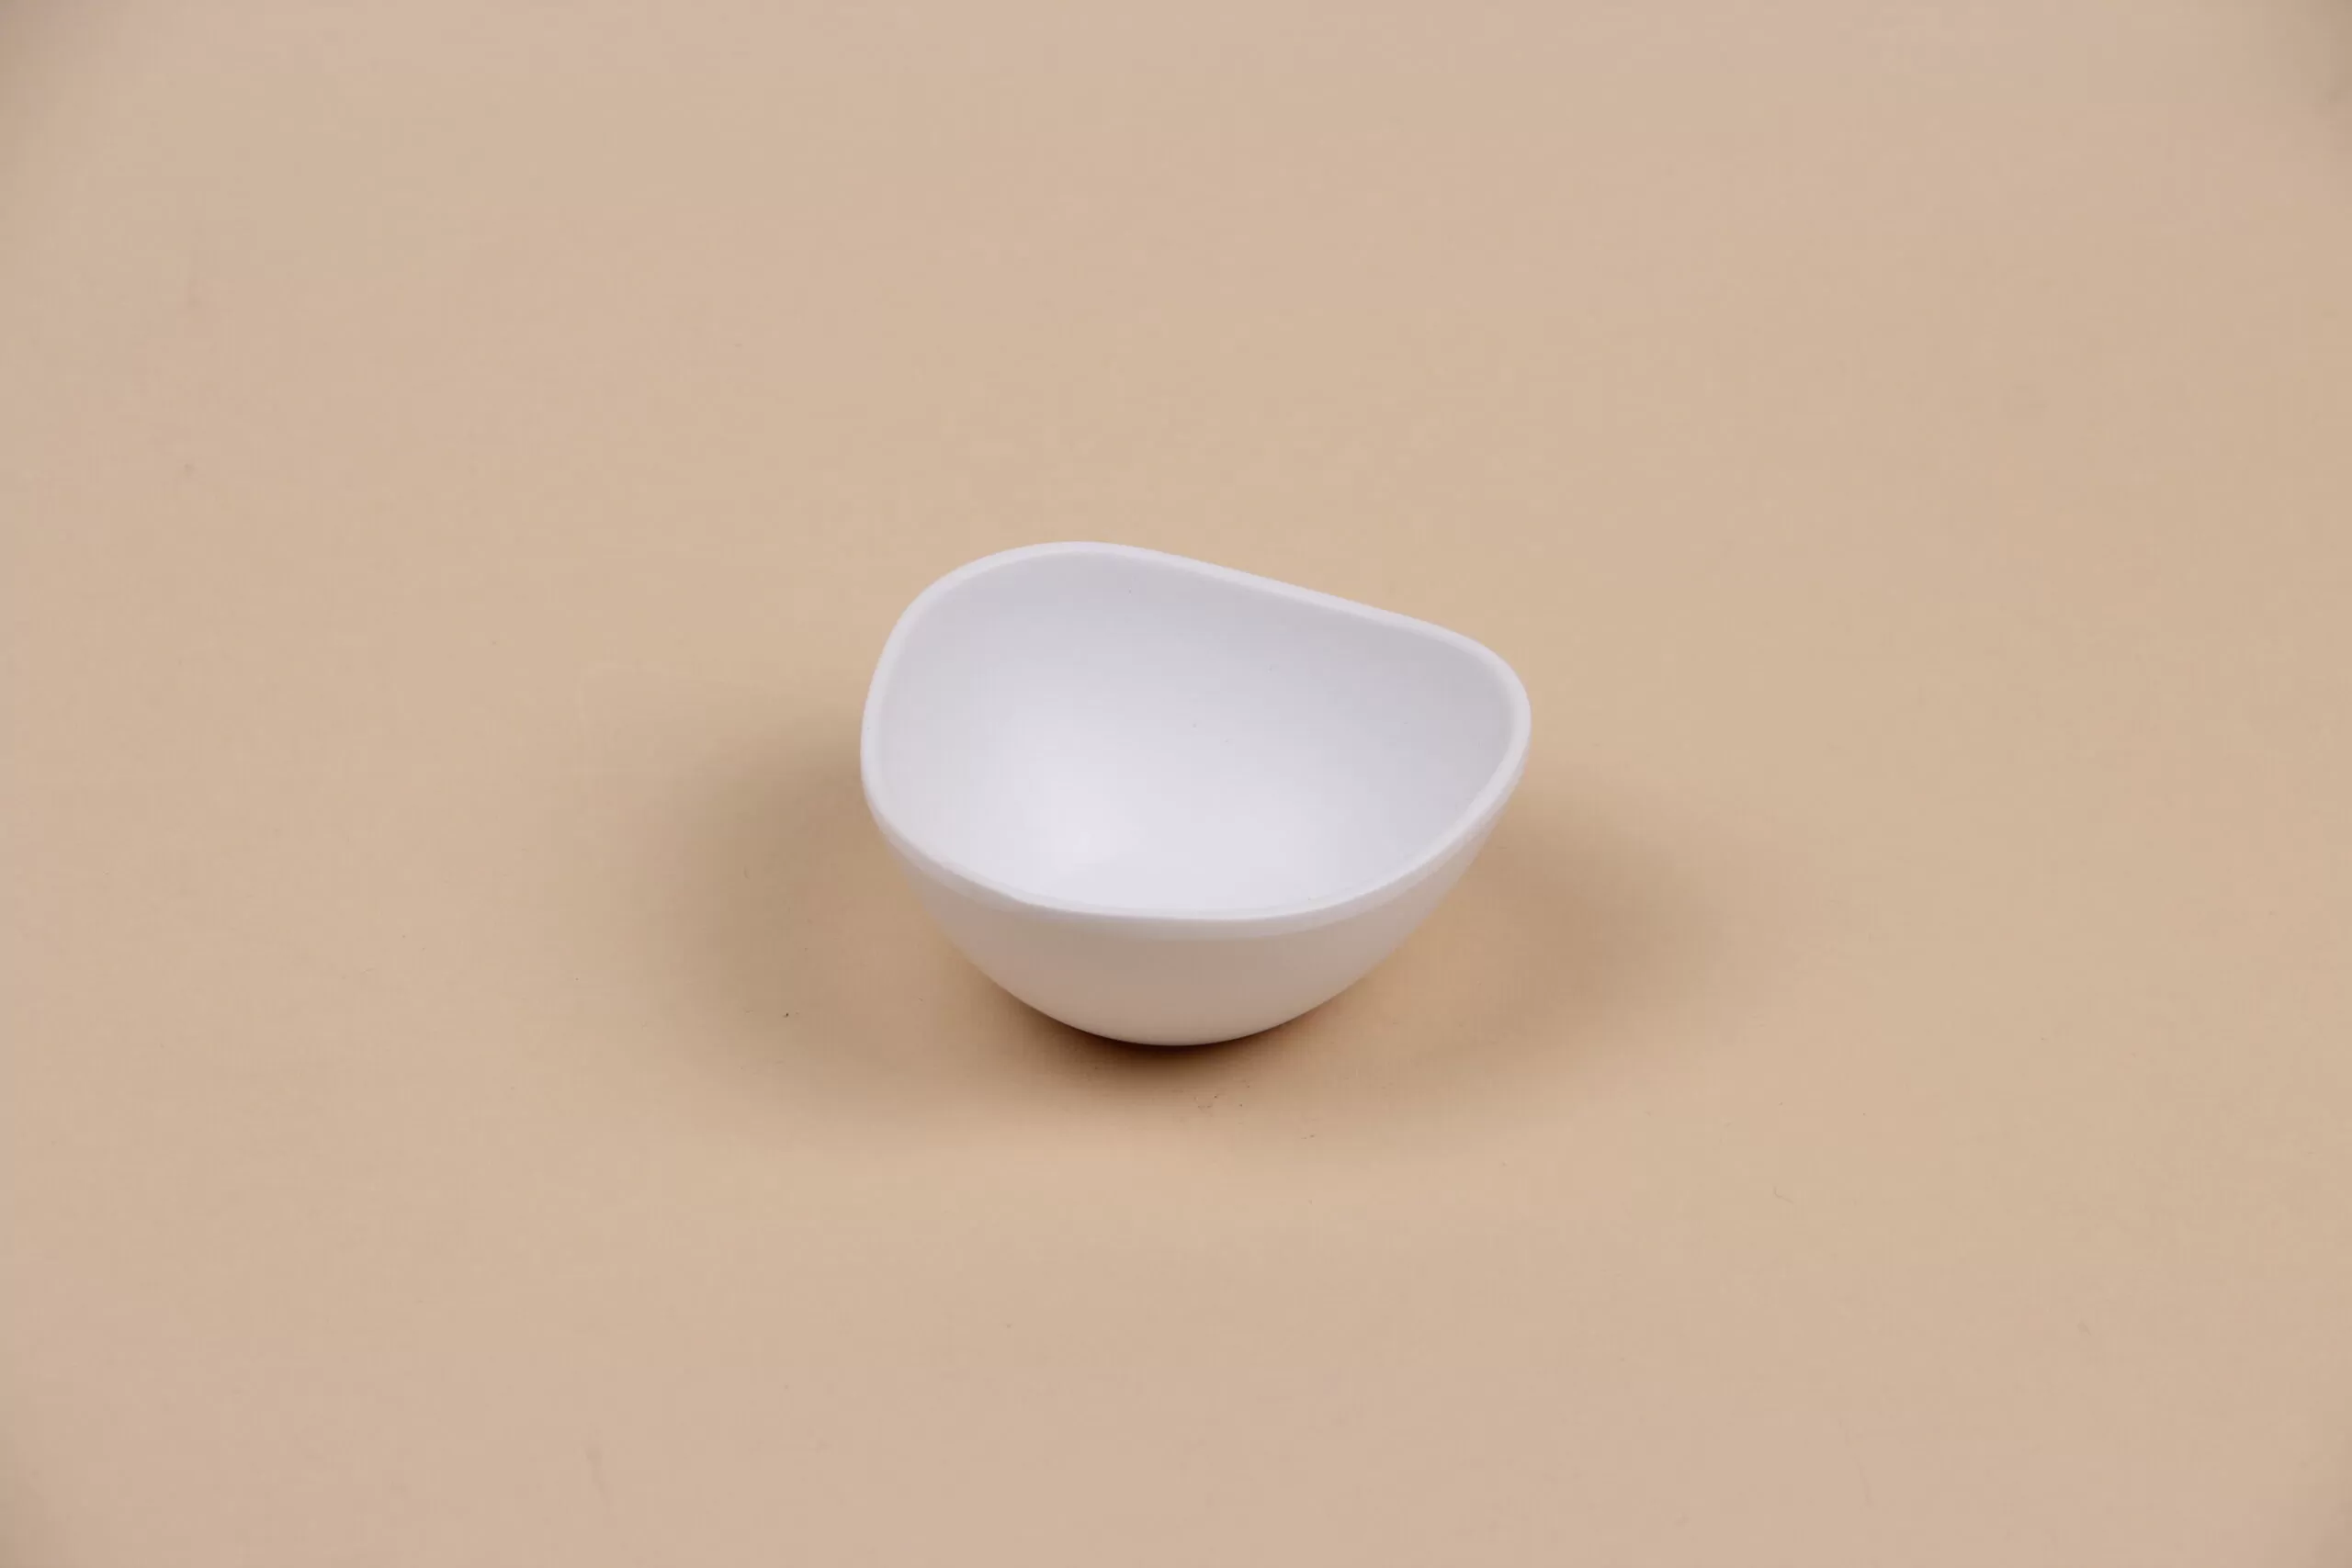 Чаша для соуса треугольная округлая белая, 50 мл, арт. 607072